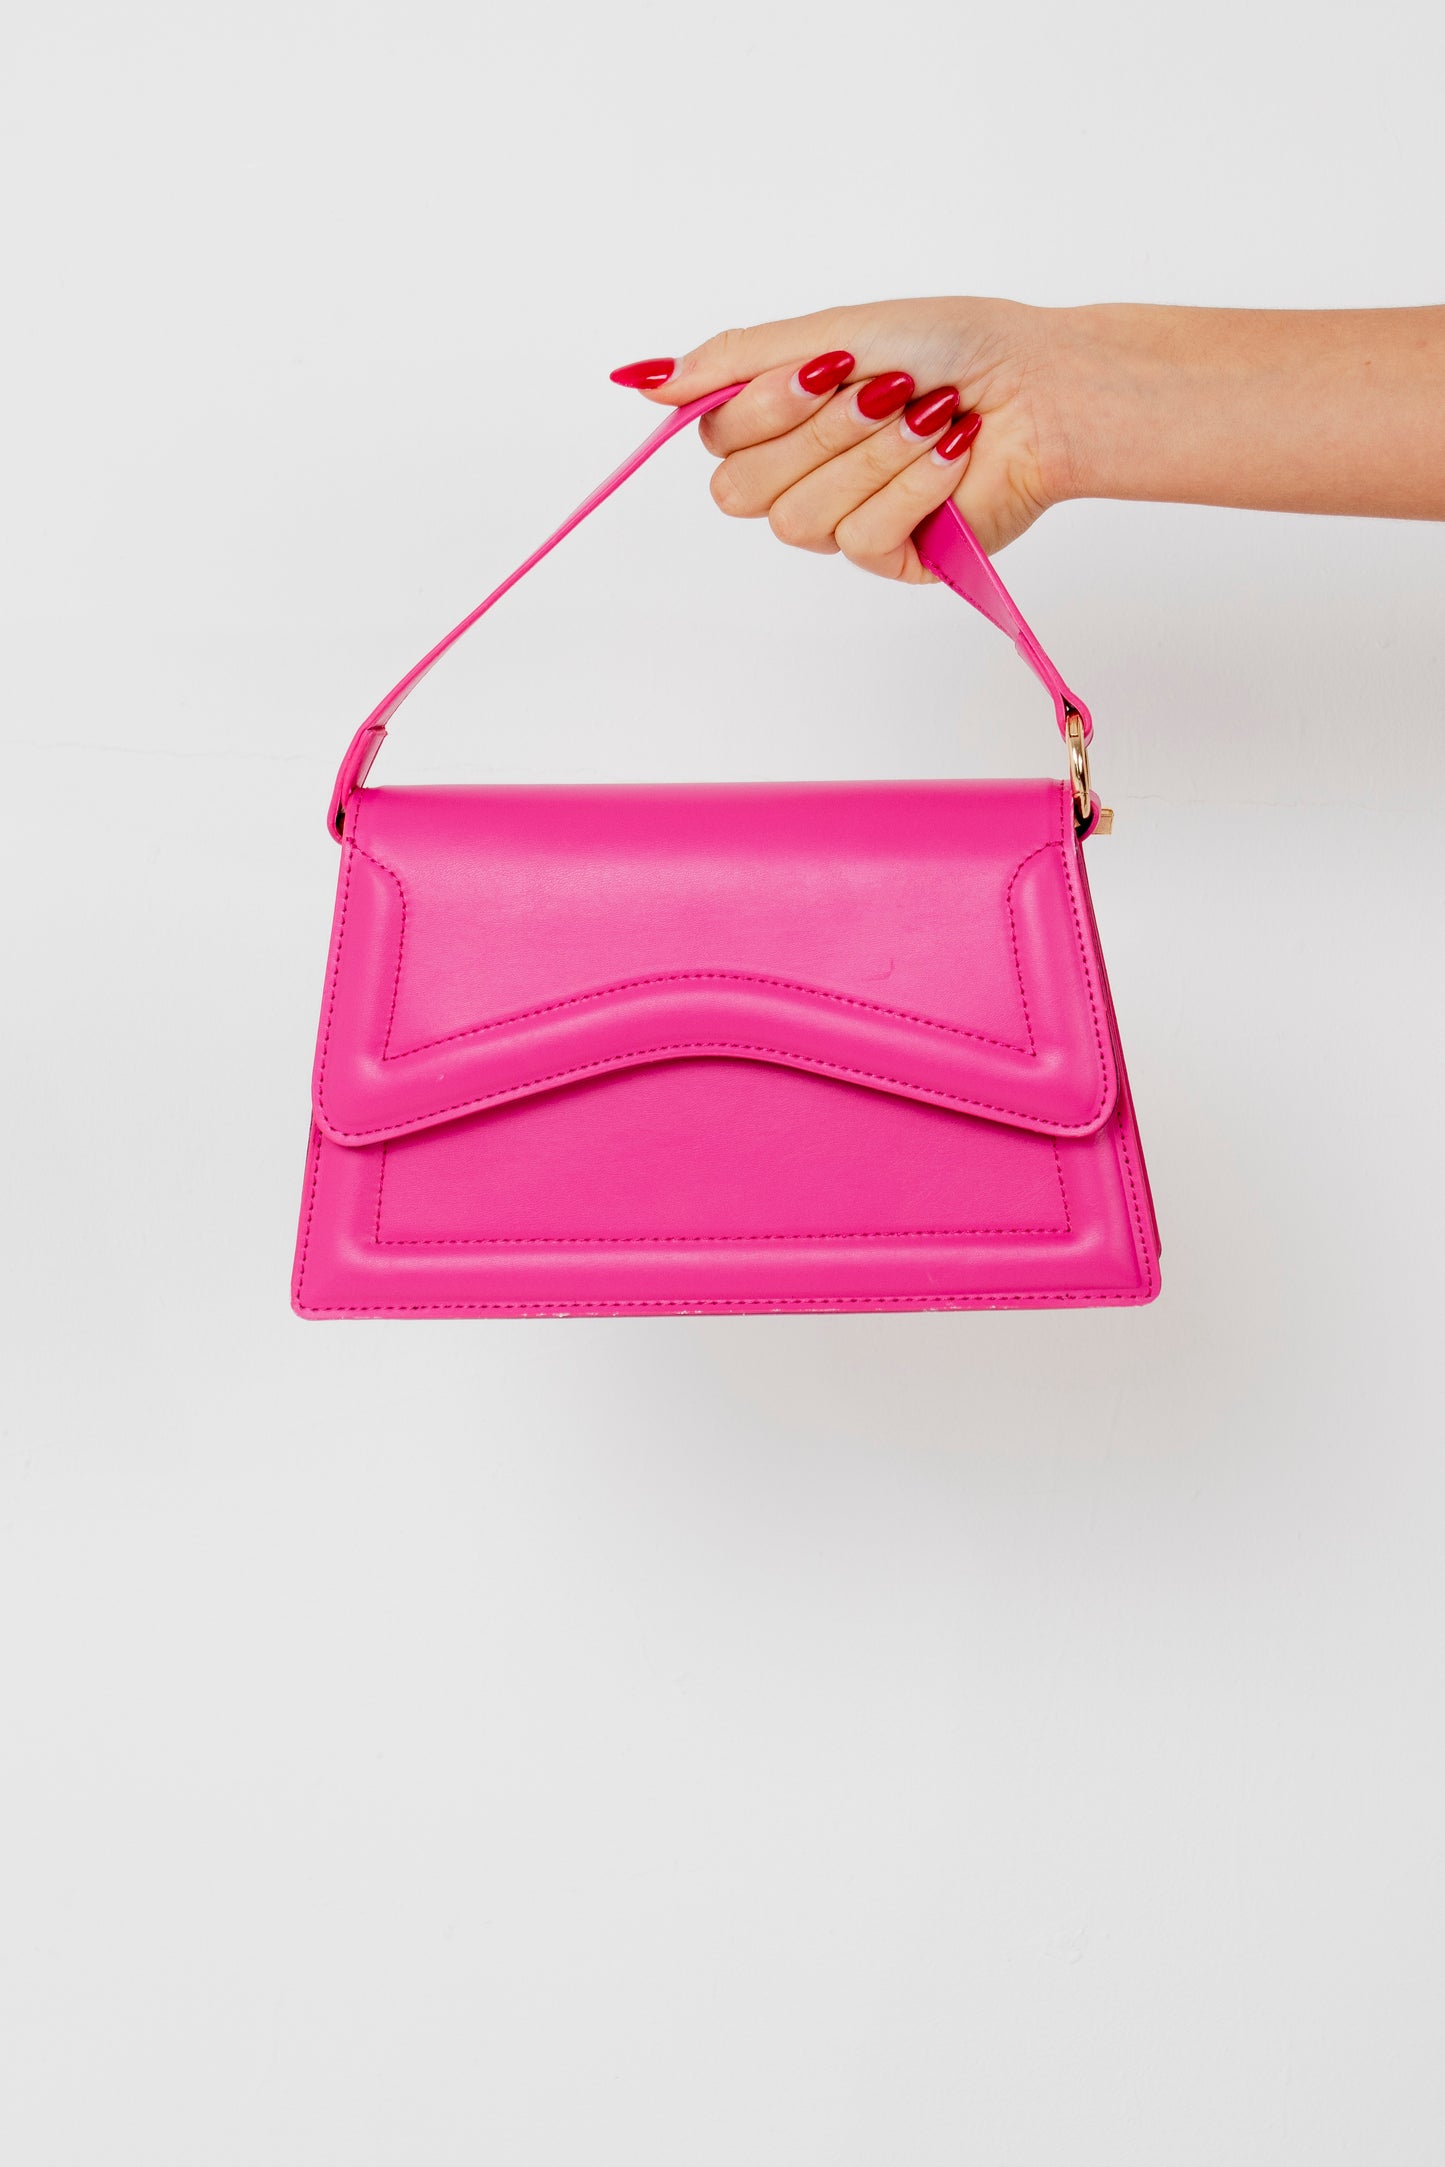 ALAYNA - Pink Mini Bag